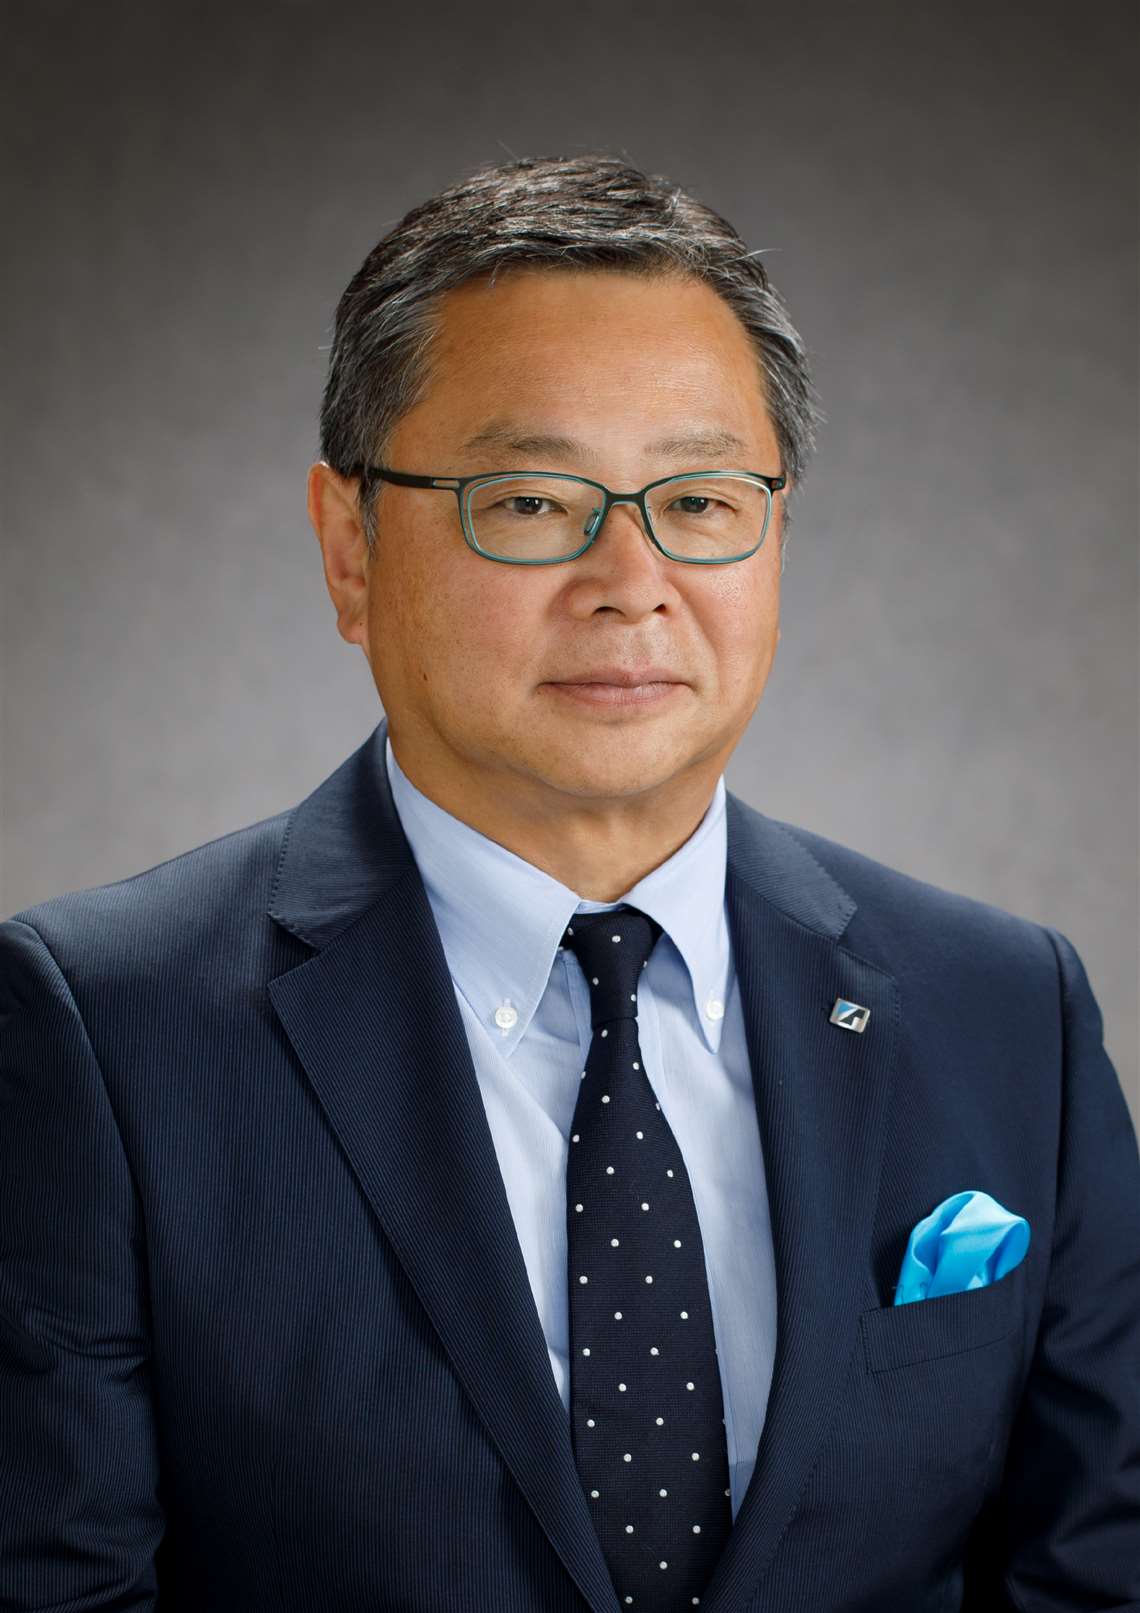 Toshiaki Ujiie corporate portrait in dark suit and tie, Tadano blue hanky